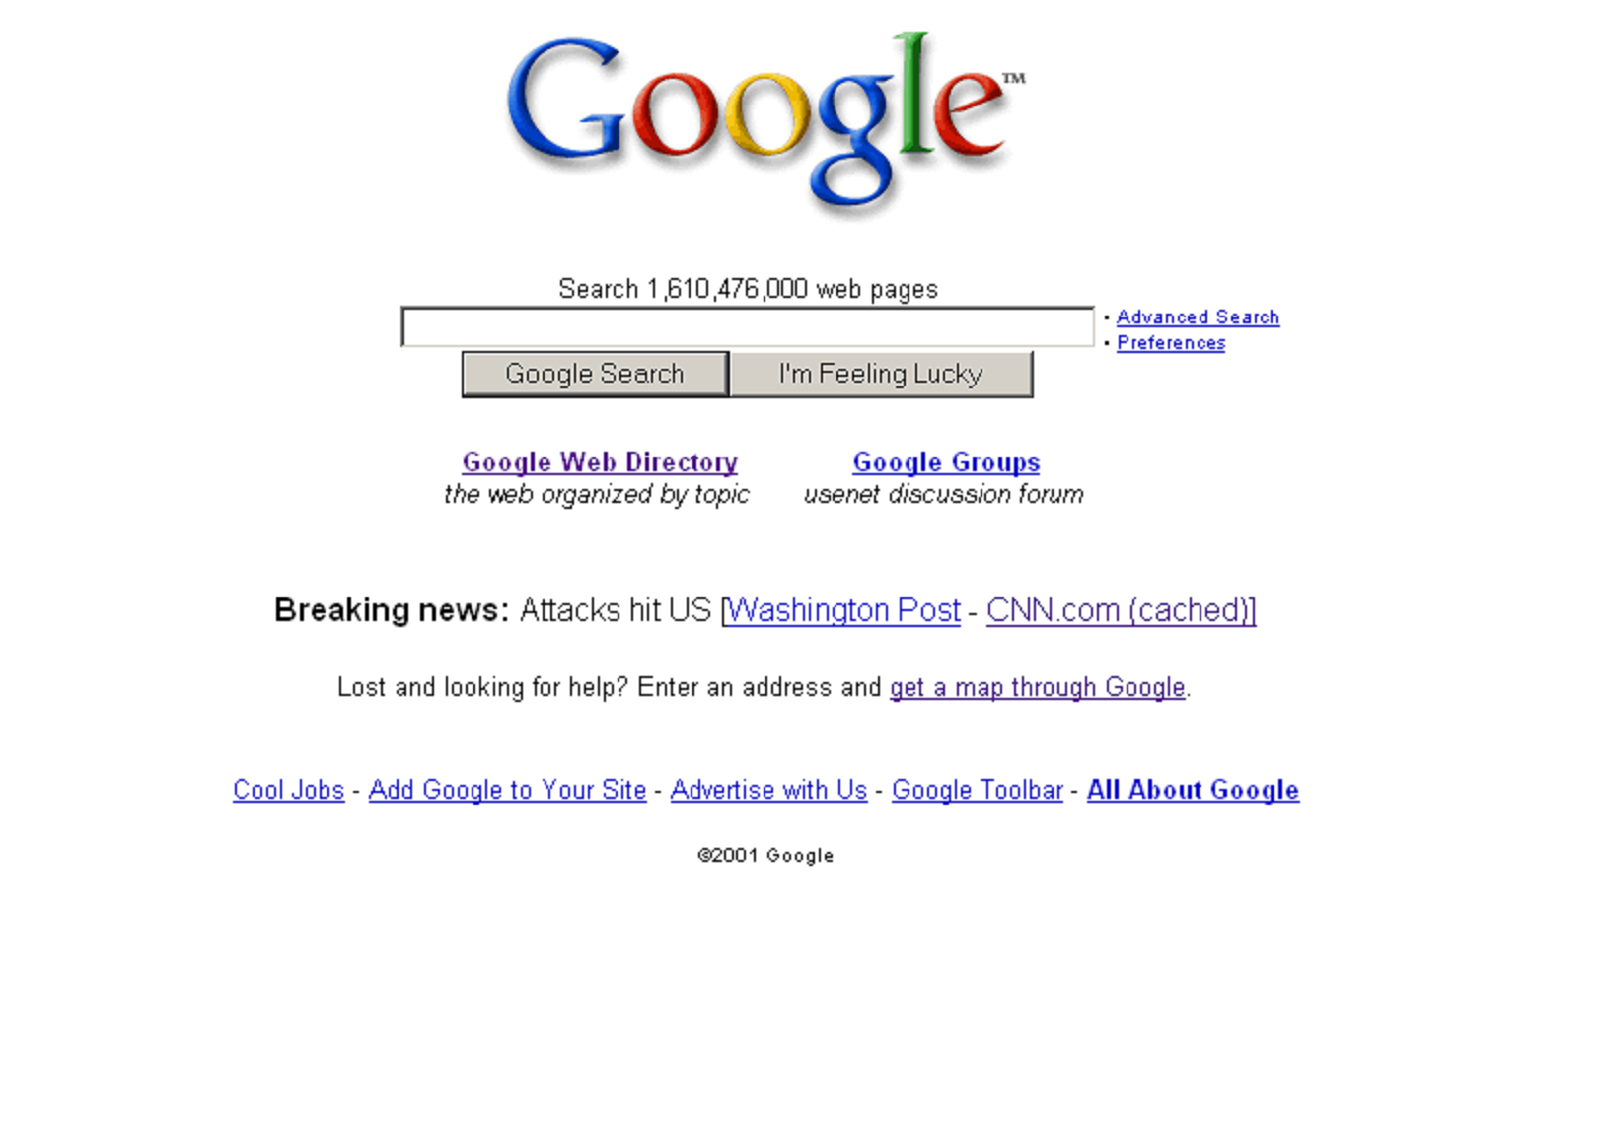 la page d'accueil de Google le 11 septembre 2001